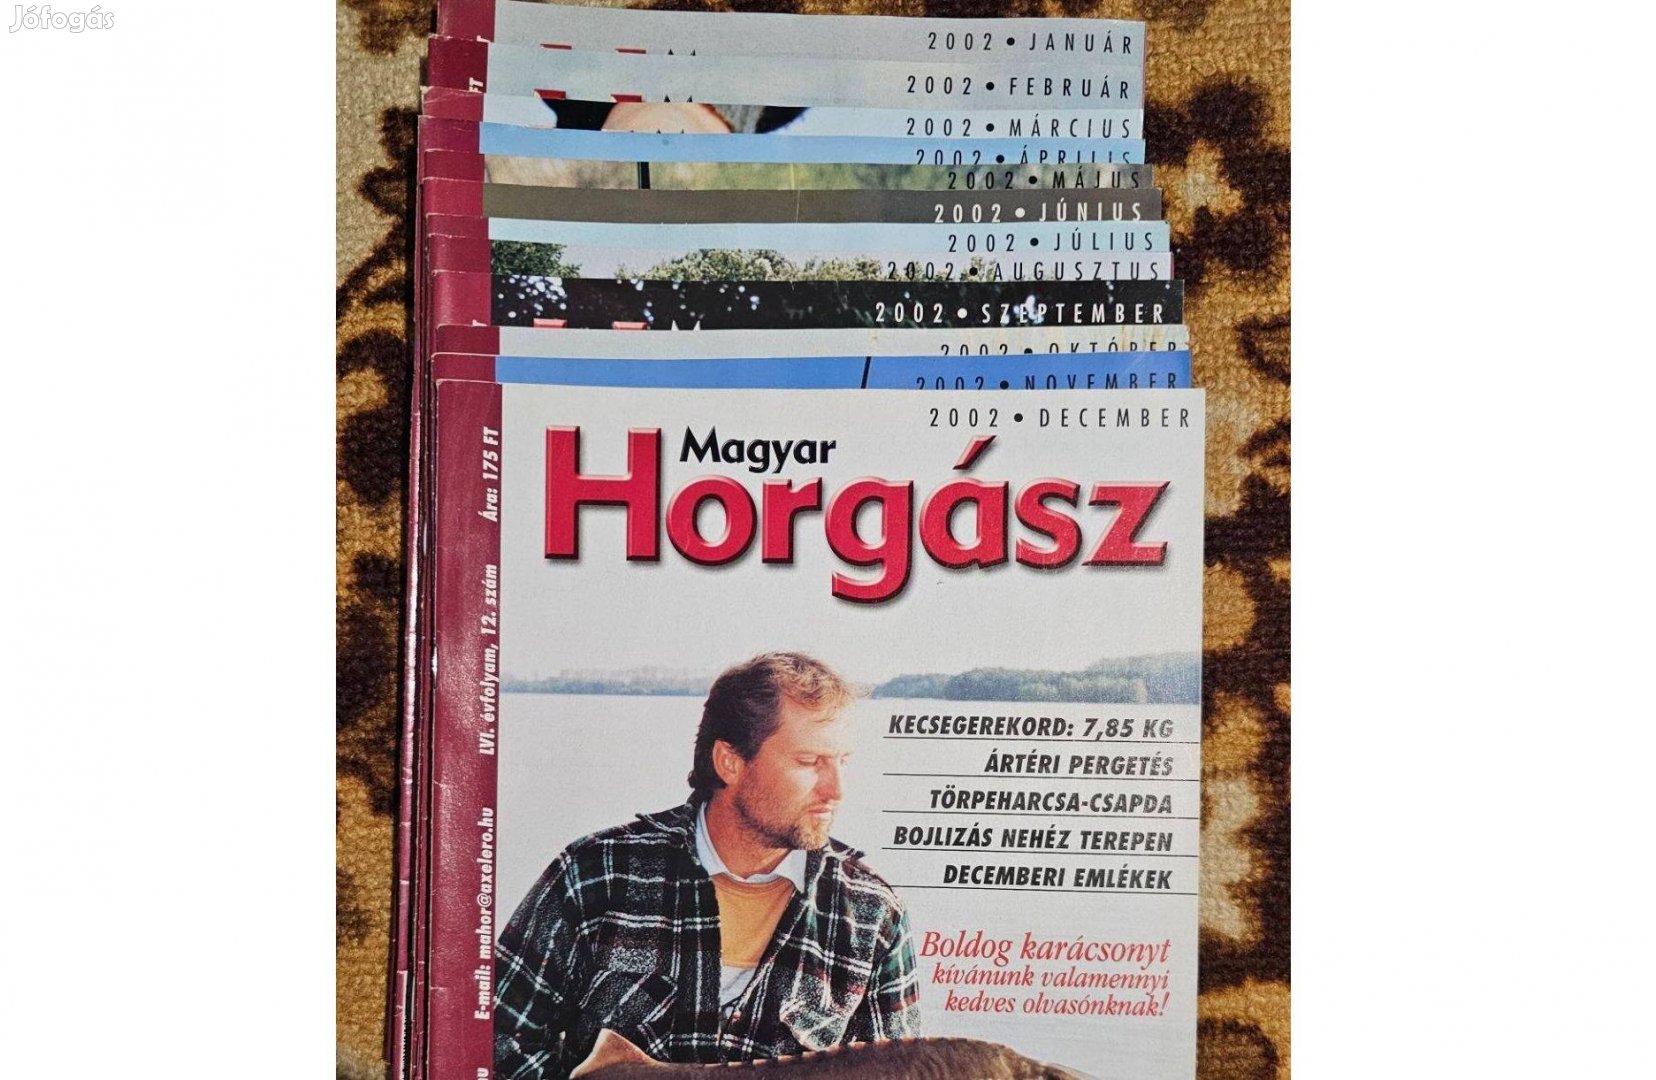 Magyar horgász LVI. évfolyam teljes